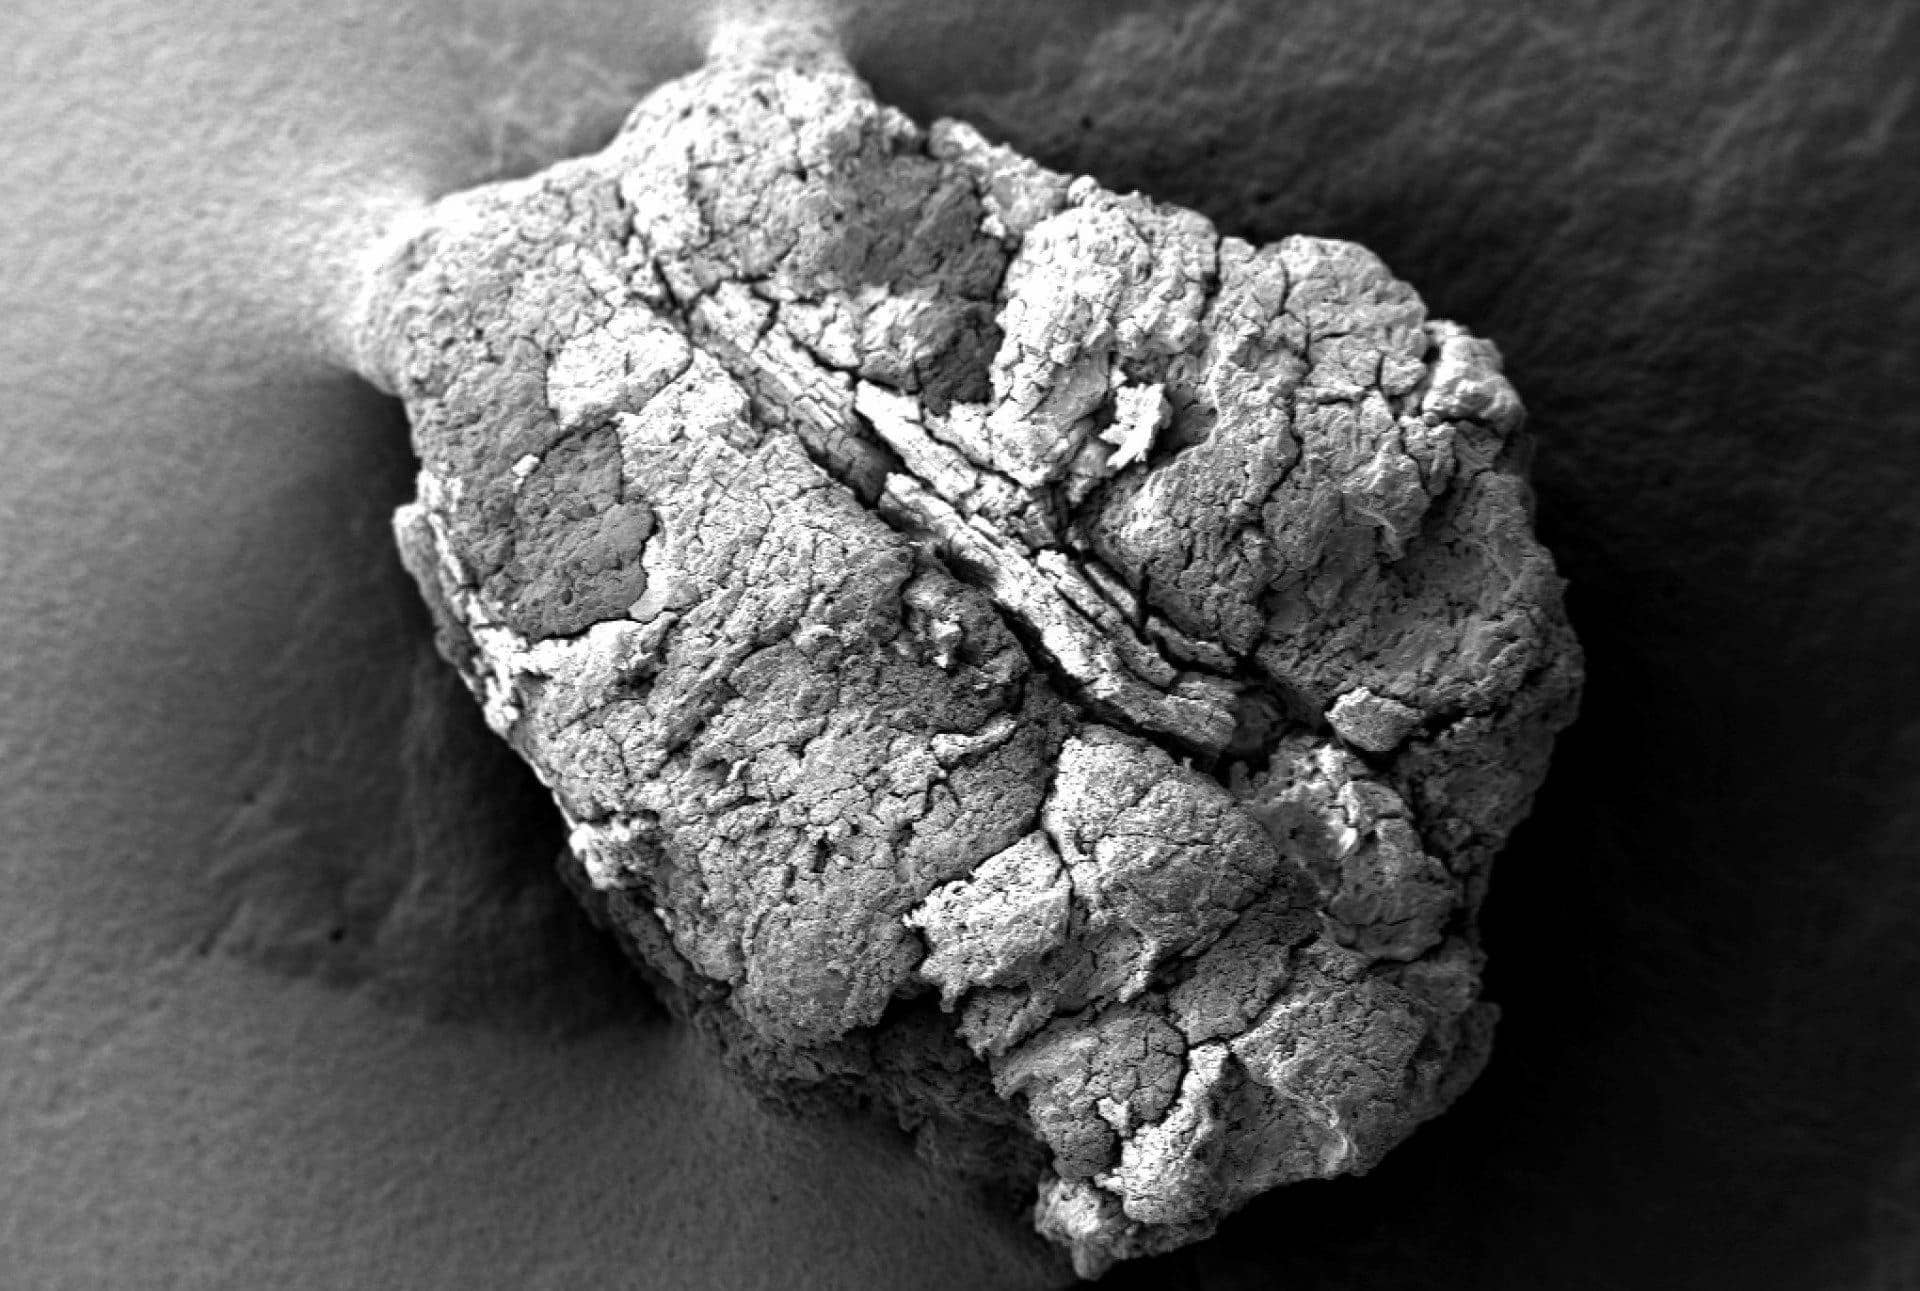 κόσμος-βόρειοι-αφρικανοί-έφαγαν-ελιές-100000-χρόνια-πριν-αποδείξεις-υποδηλώνουν-καιροί-ελαιολάδου